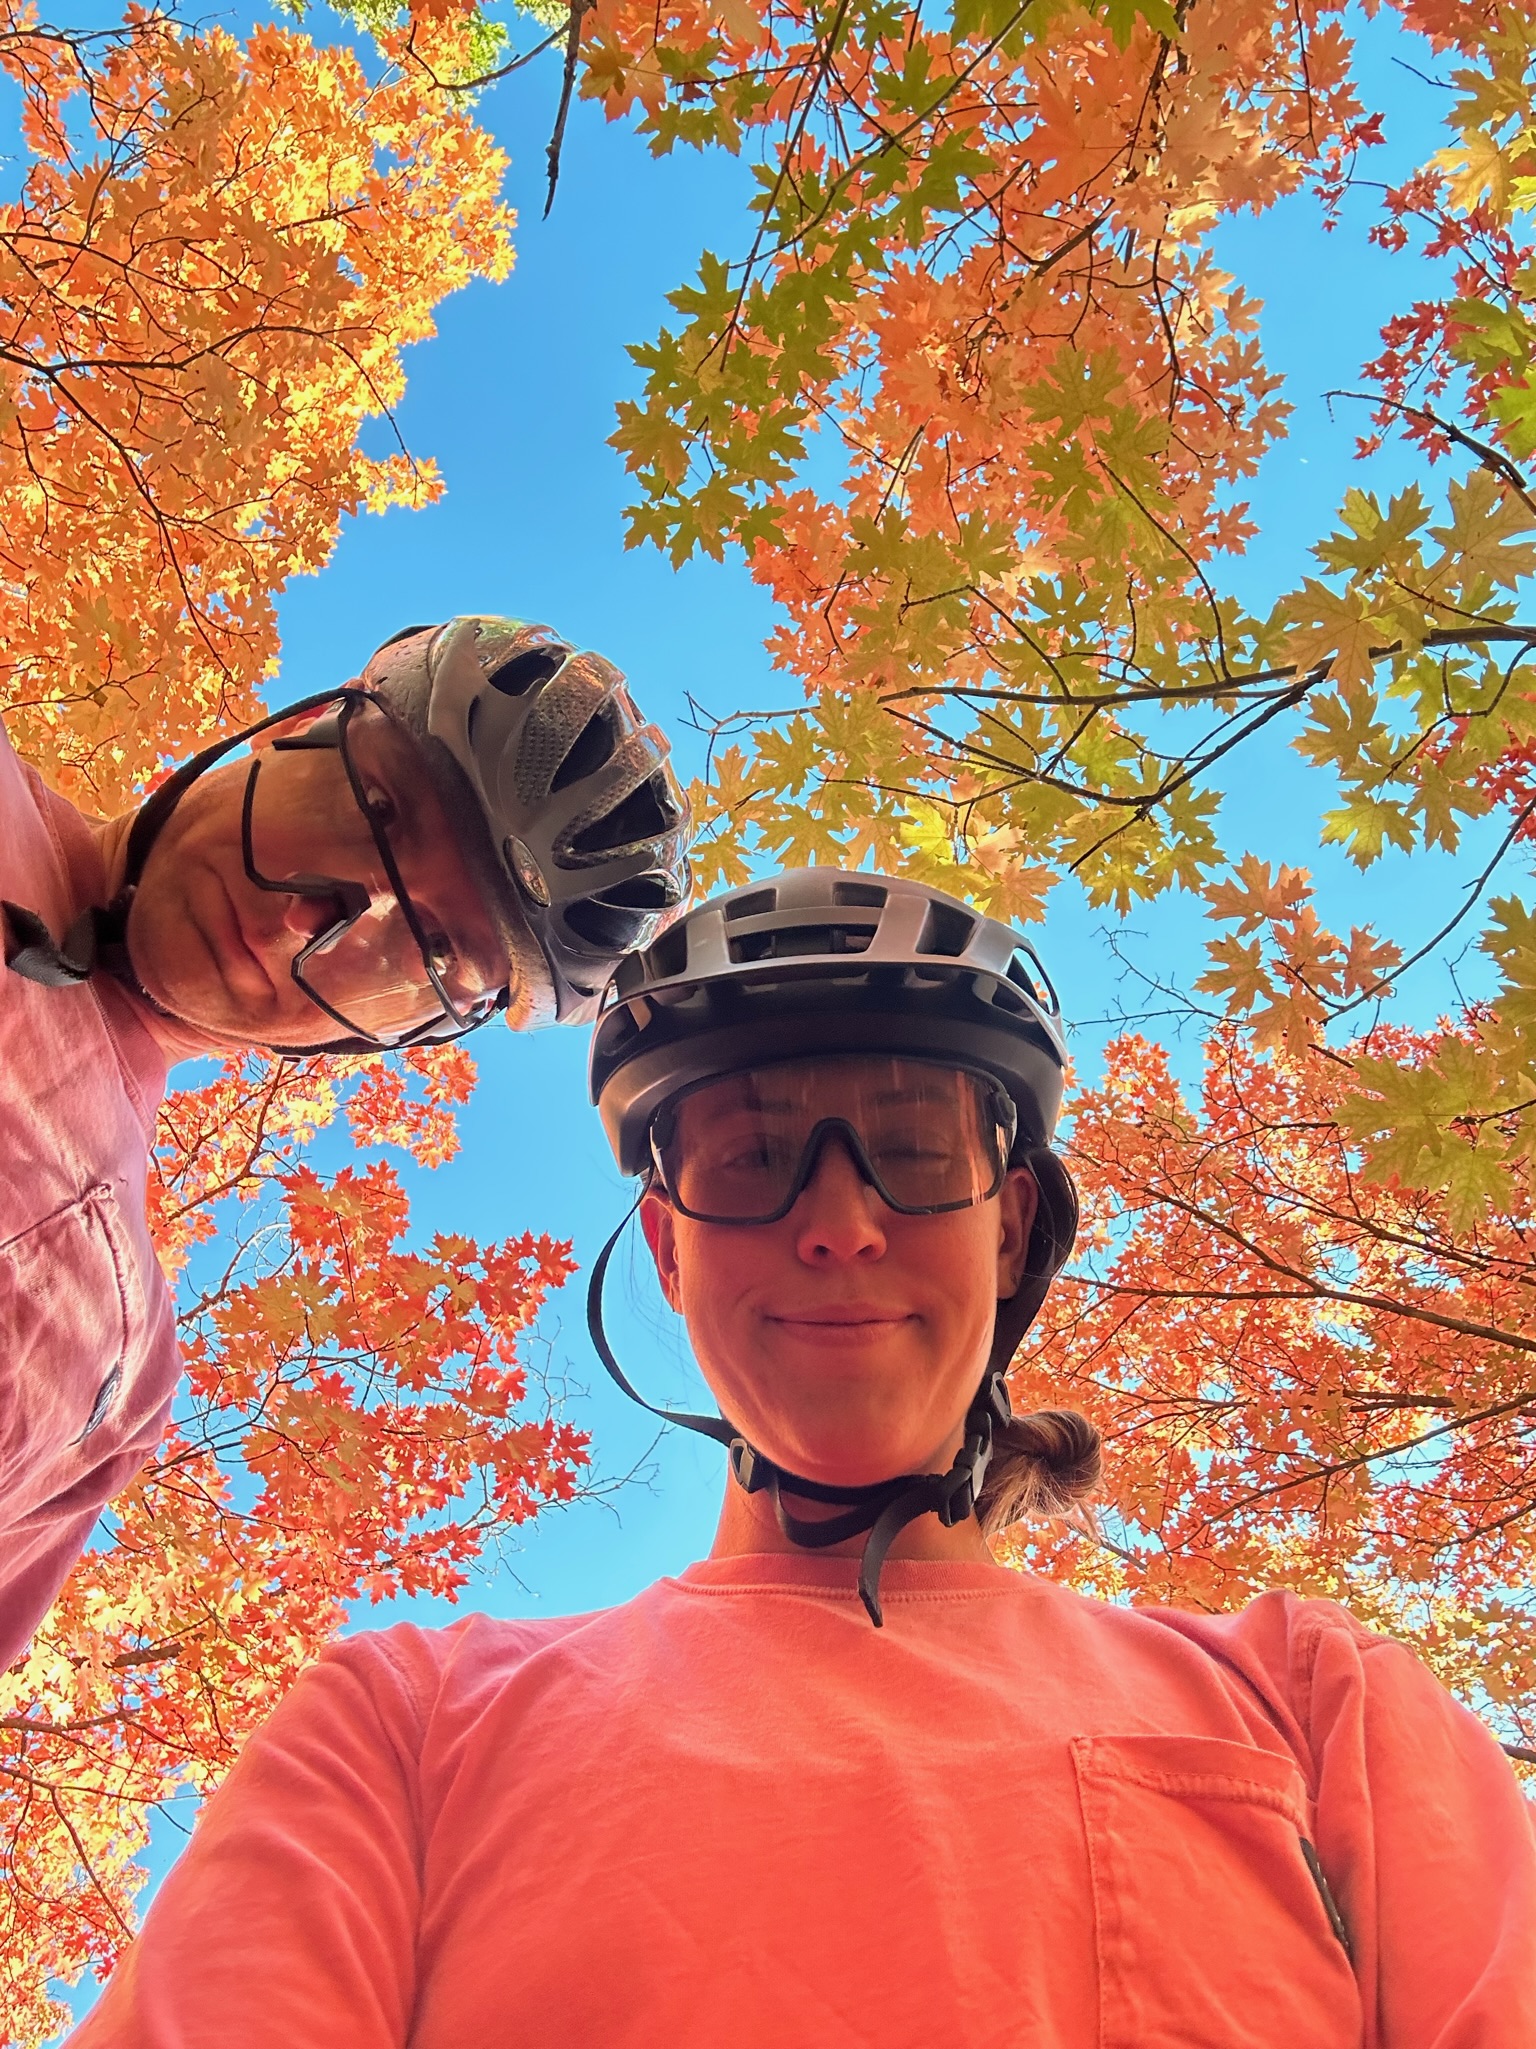 Two people in bike riding helmets in a selfie